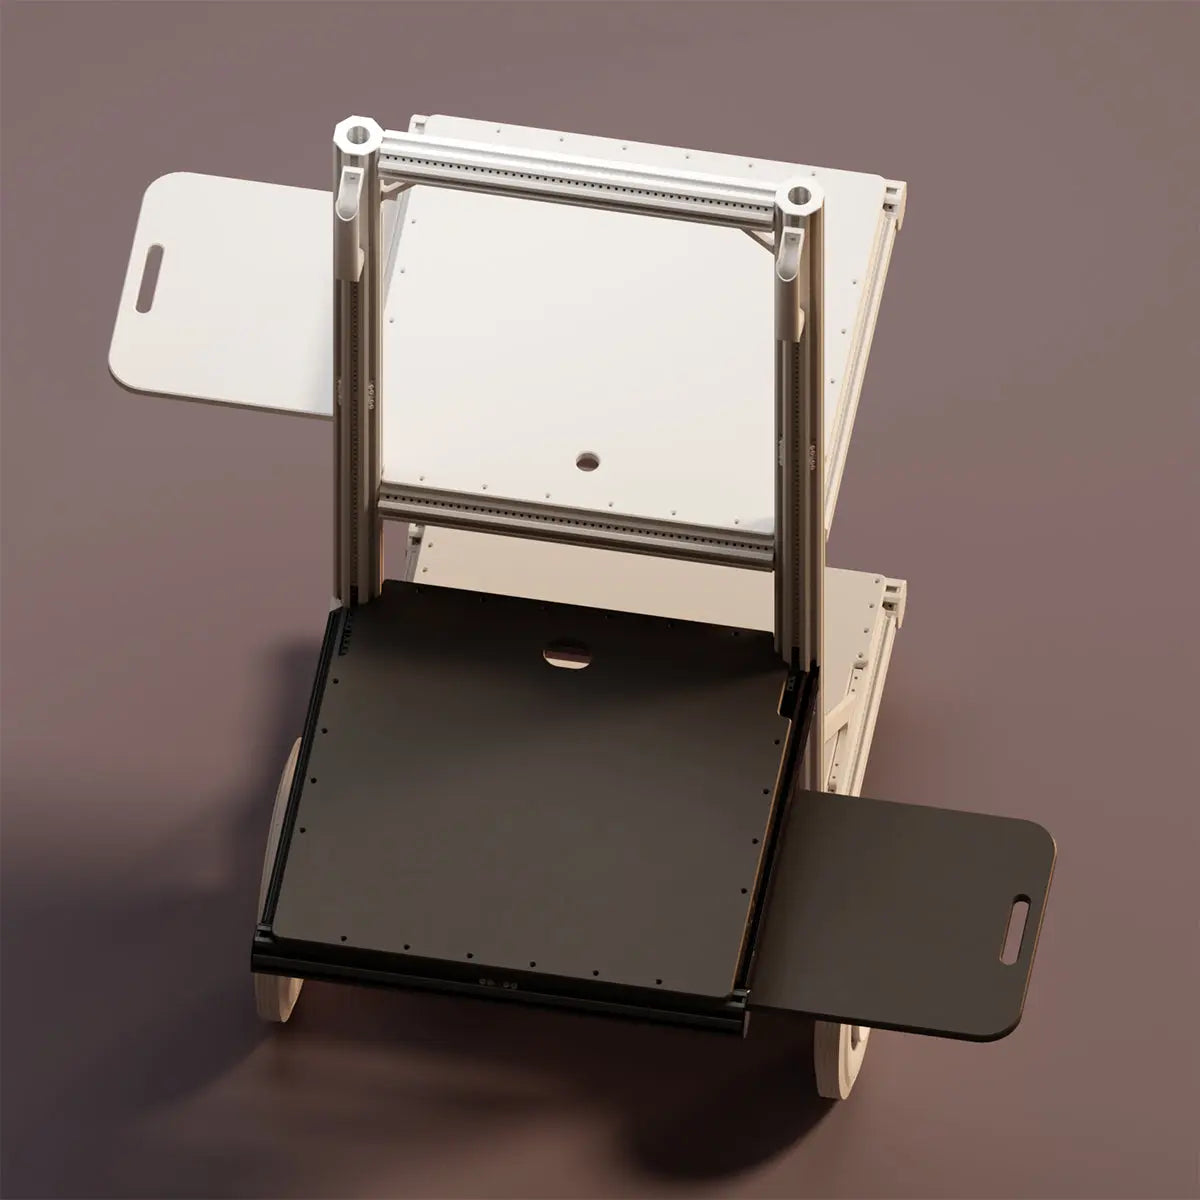 Portable Station - Extendable Desk